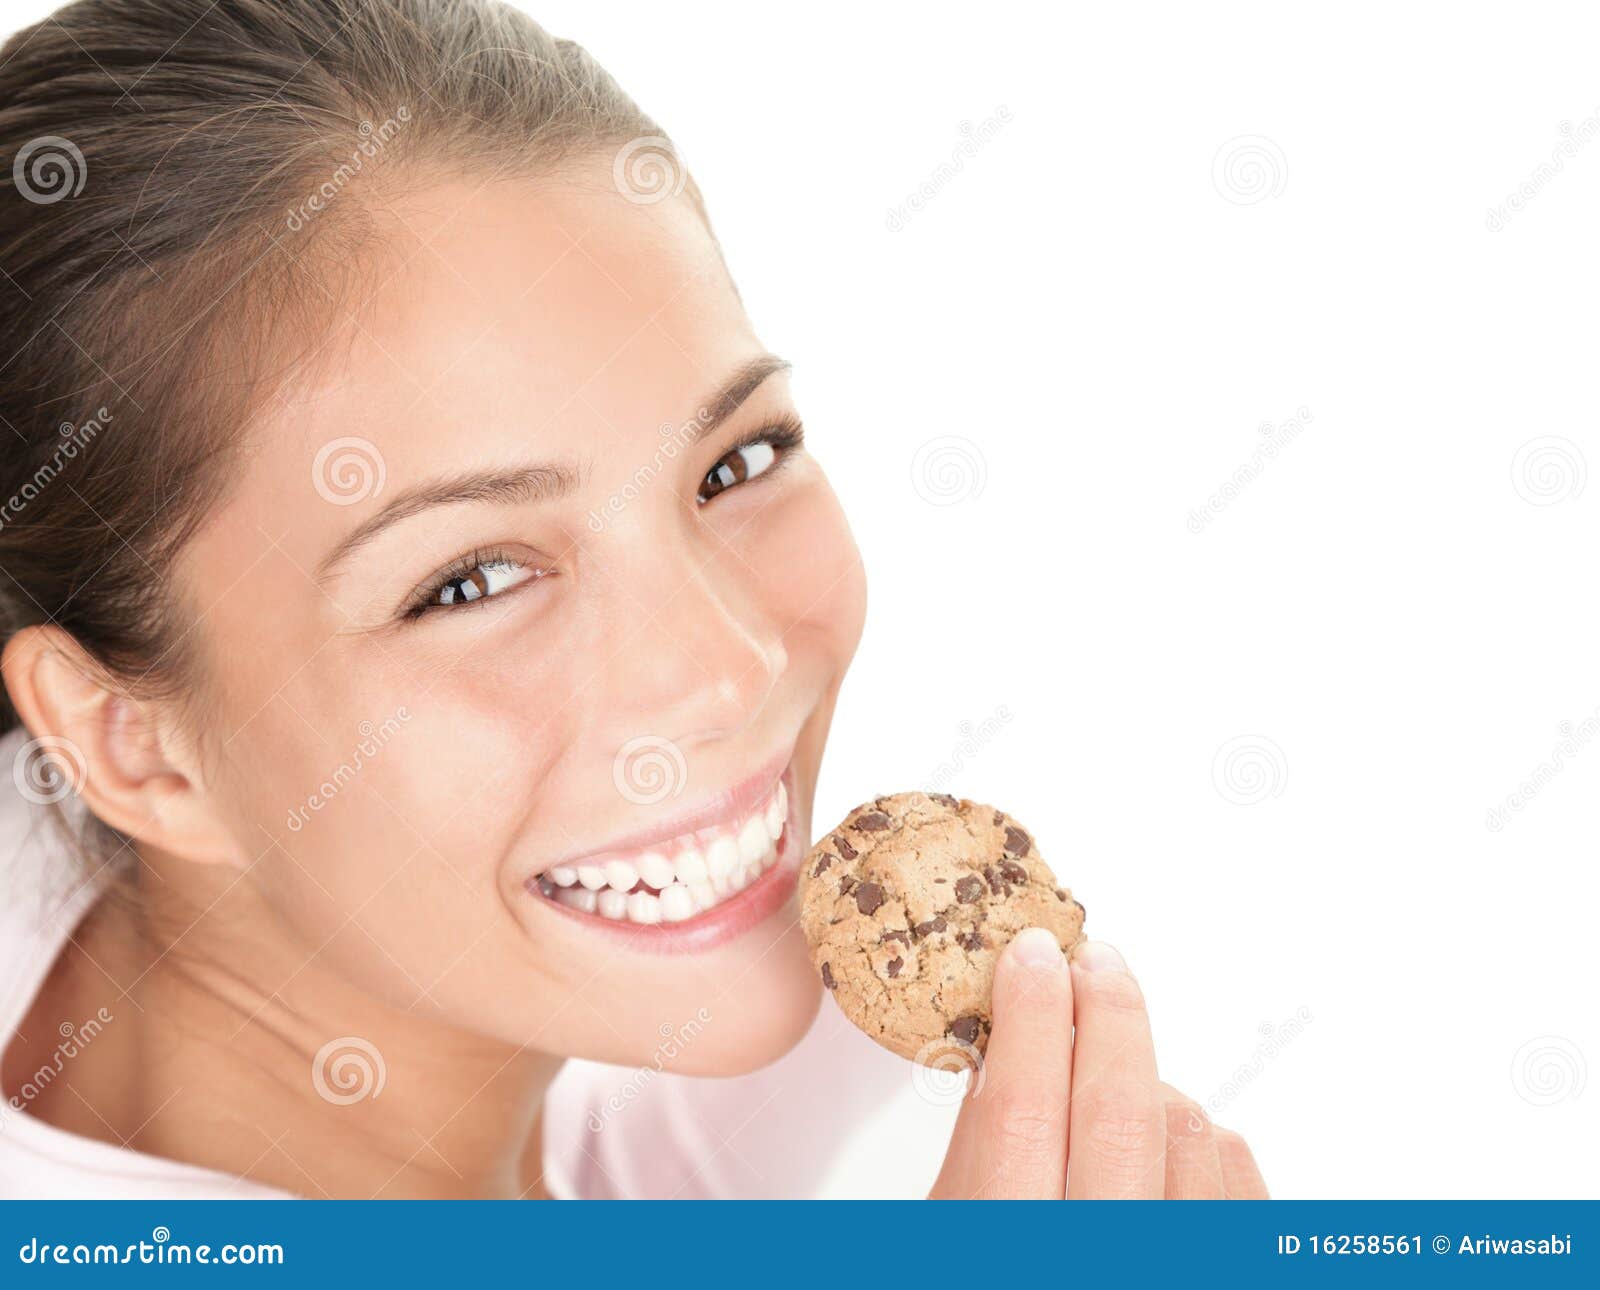 Traktat Sig til side Lår Woman eating cookie stock image. Image of girl, portrait - 16258561